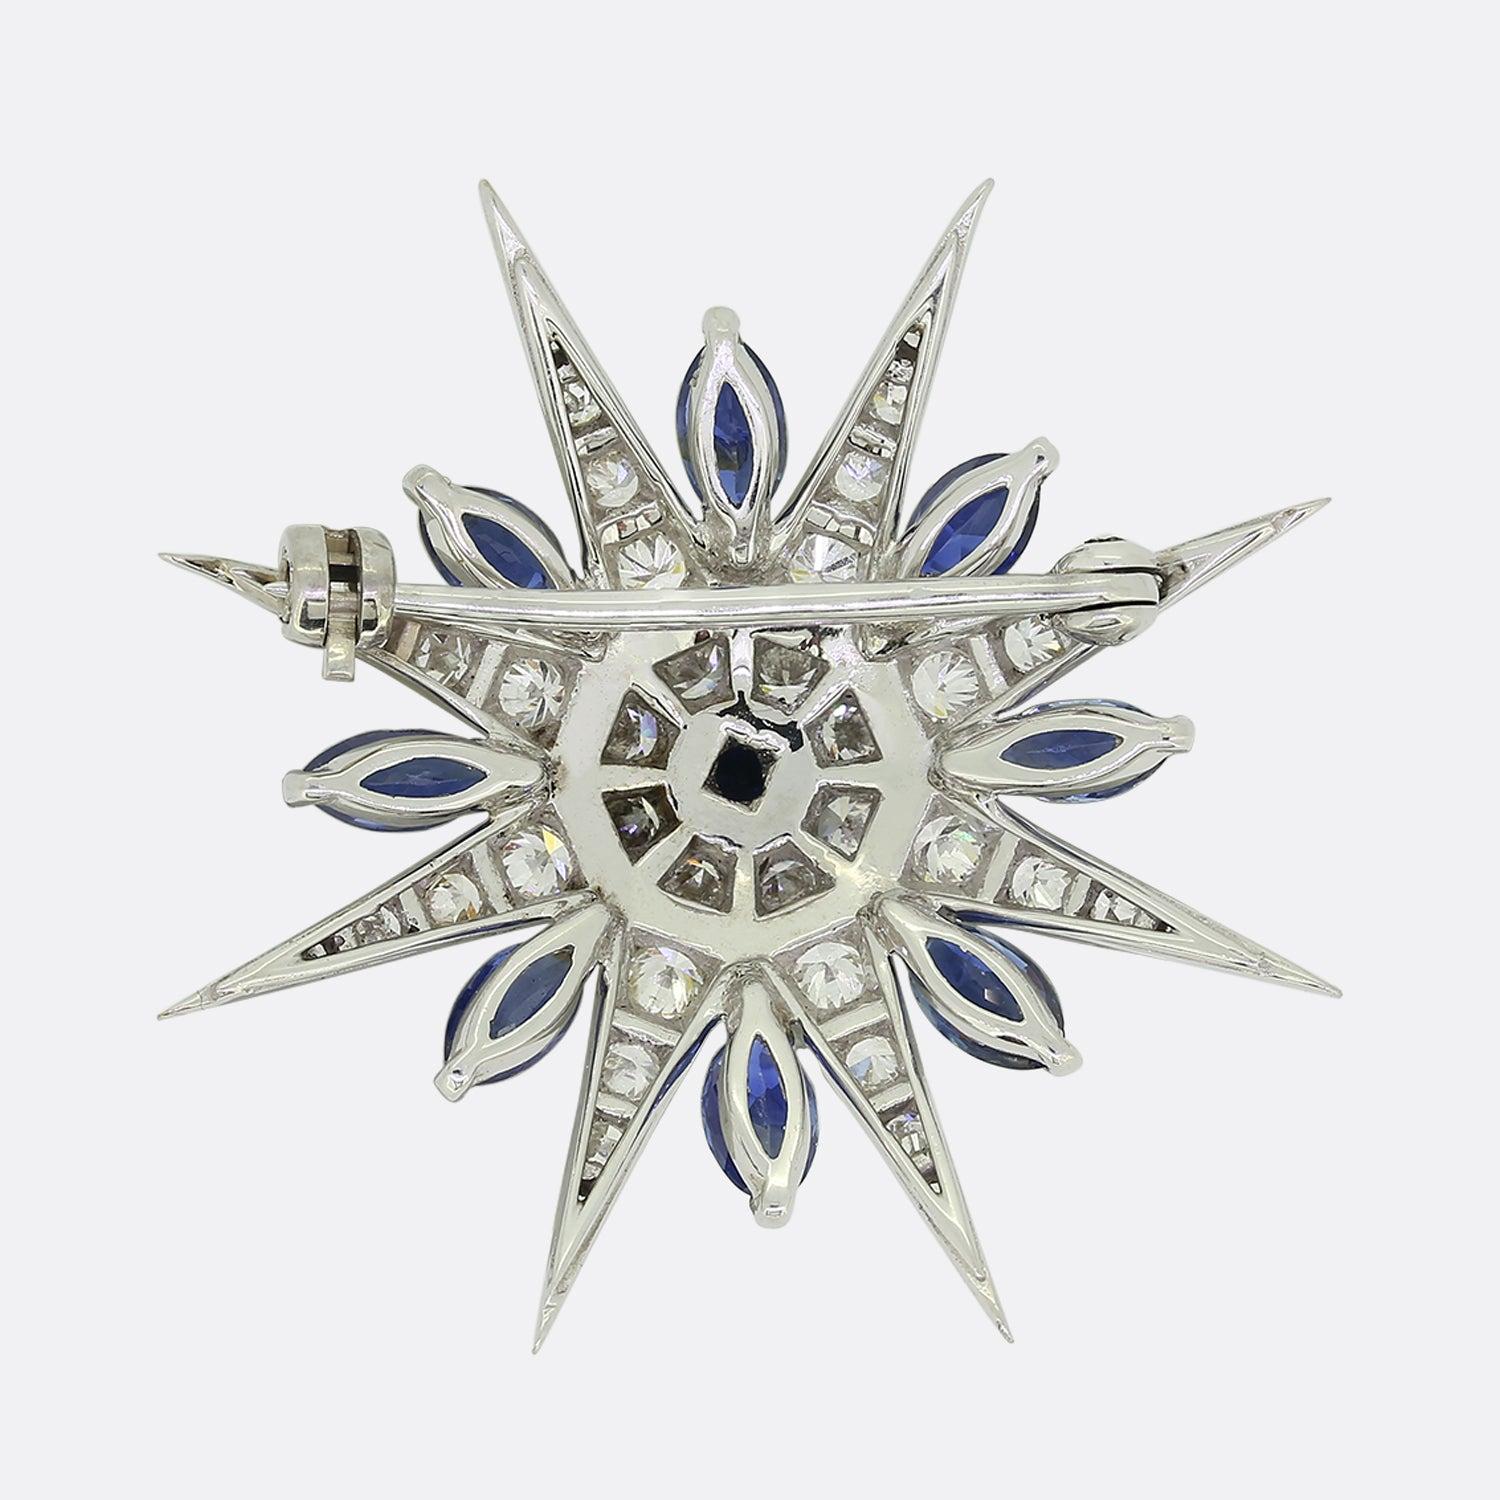 Dies ist eine wunderschön gearbeitete Saphir- und Diamant-Sternbrosche. Dieser achtzackige Stern beherbergt eine Vielzahl von Diamanten im einfachen und runden Brillantschliff, die in Farbe und Reinheit perfekt aufeinander abgestimmt sind. Dieses